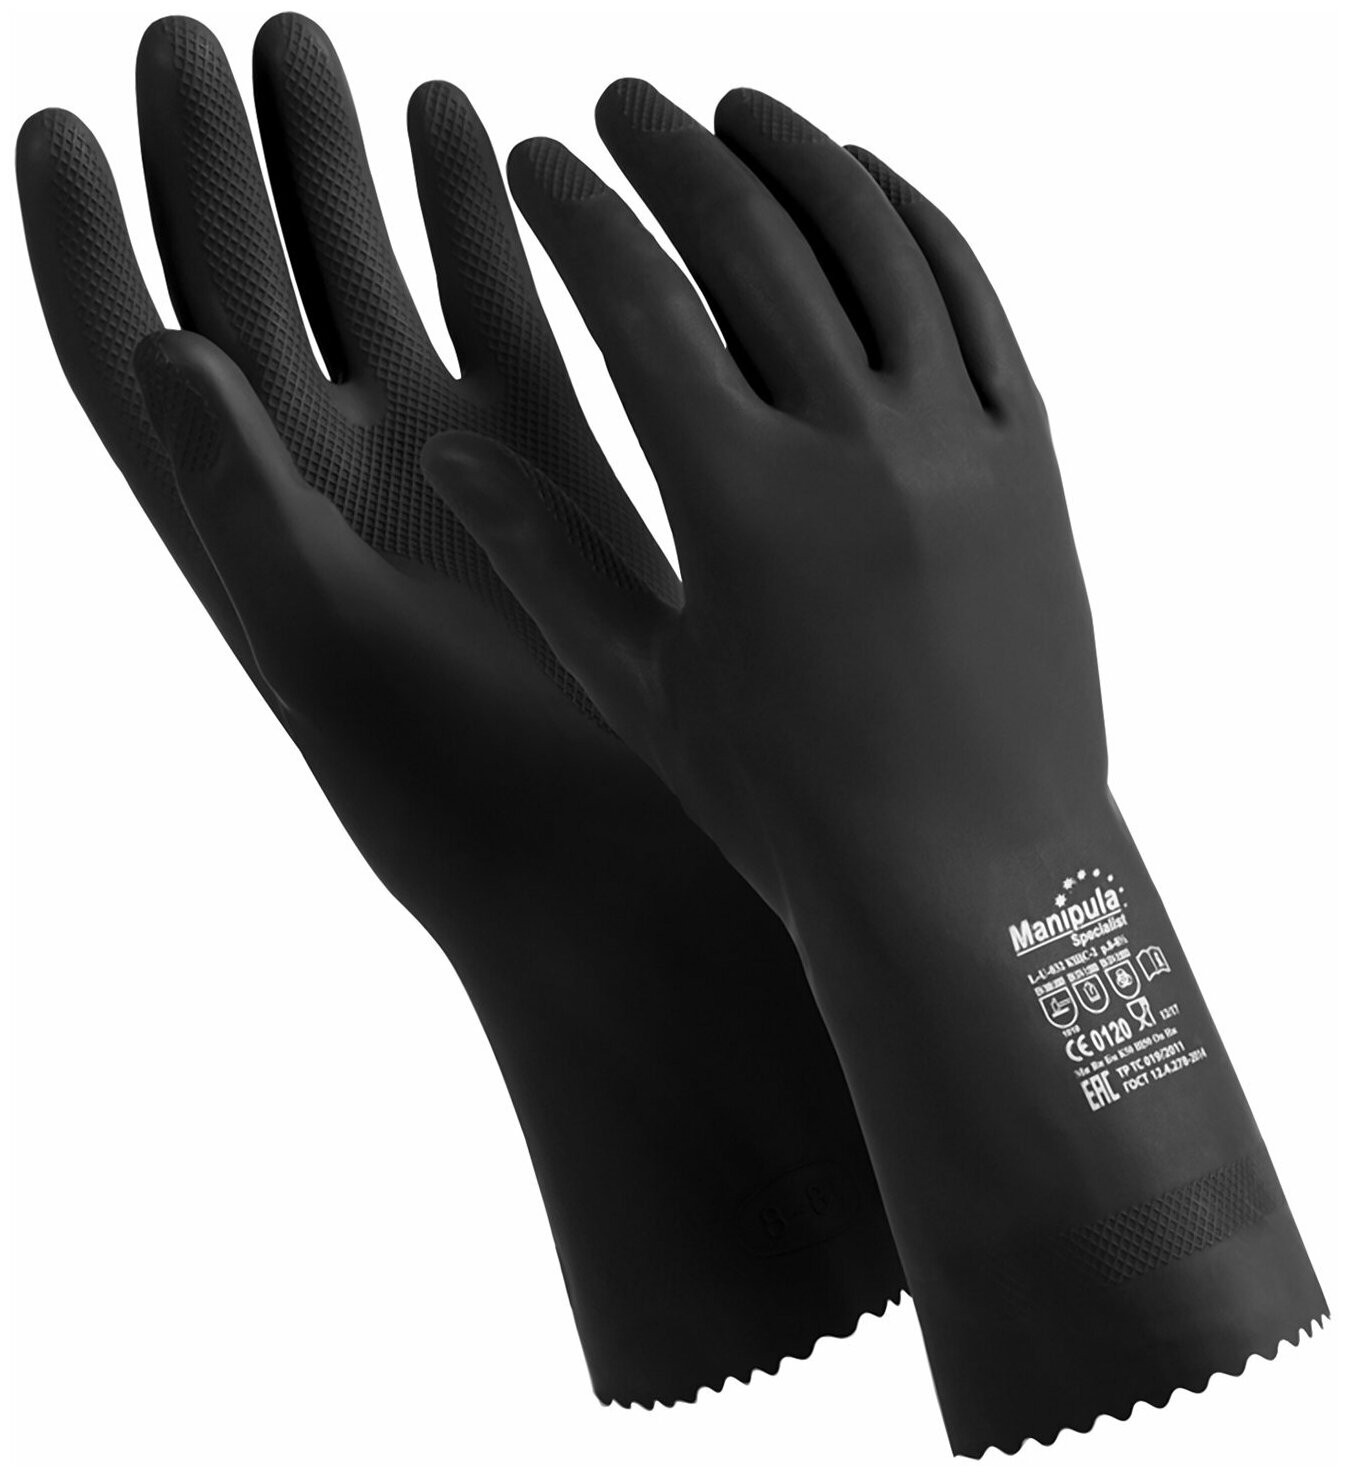 Перчатки защитные Manipula Specialist латексные кщс-2, ультратонкие, размер 9-9,5 l, черные